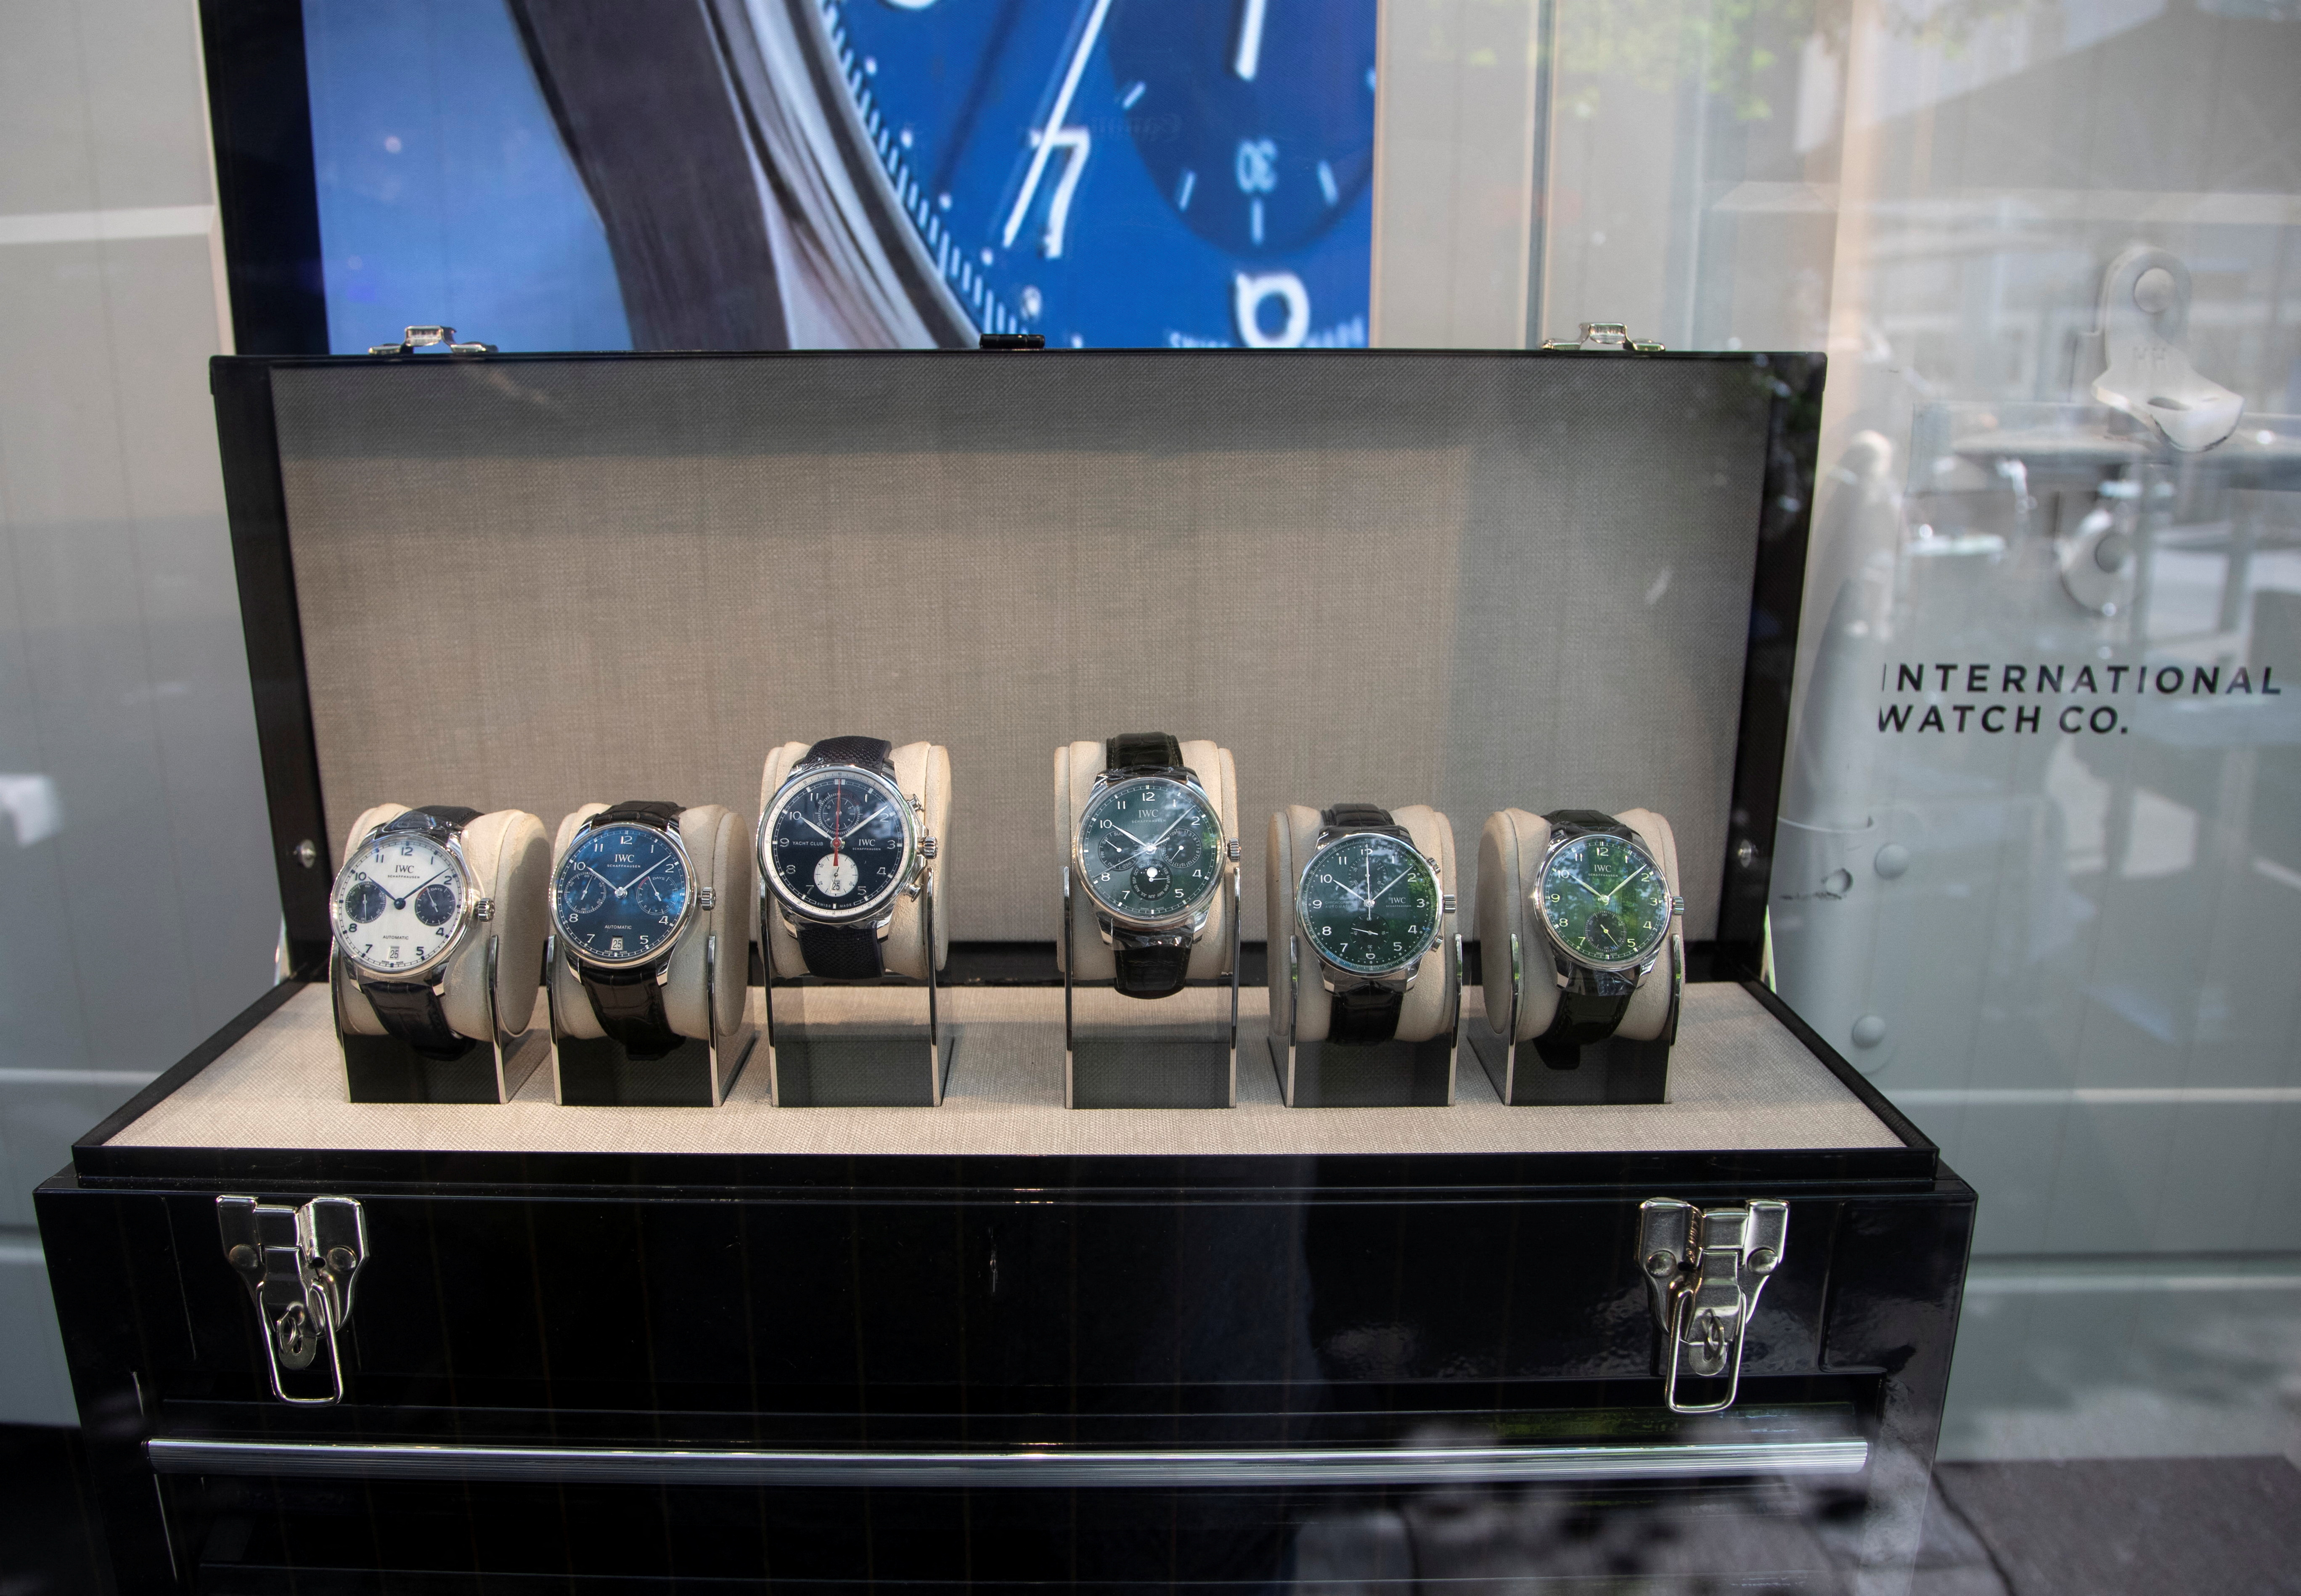 Watches of Swiss watch manufacturer IWC Schaffhausen are displayed in Zurich